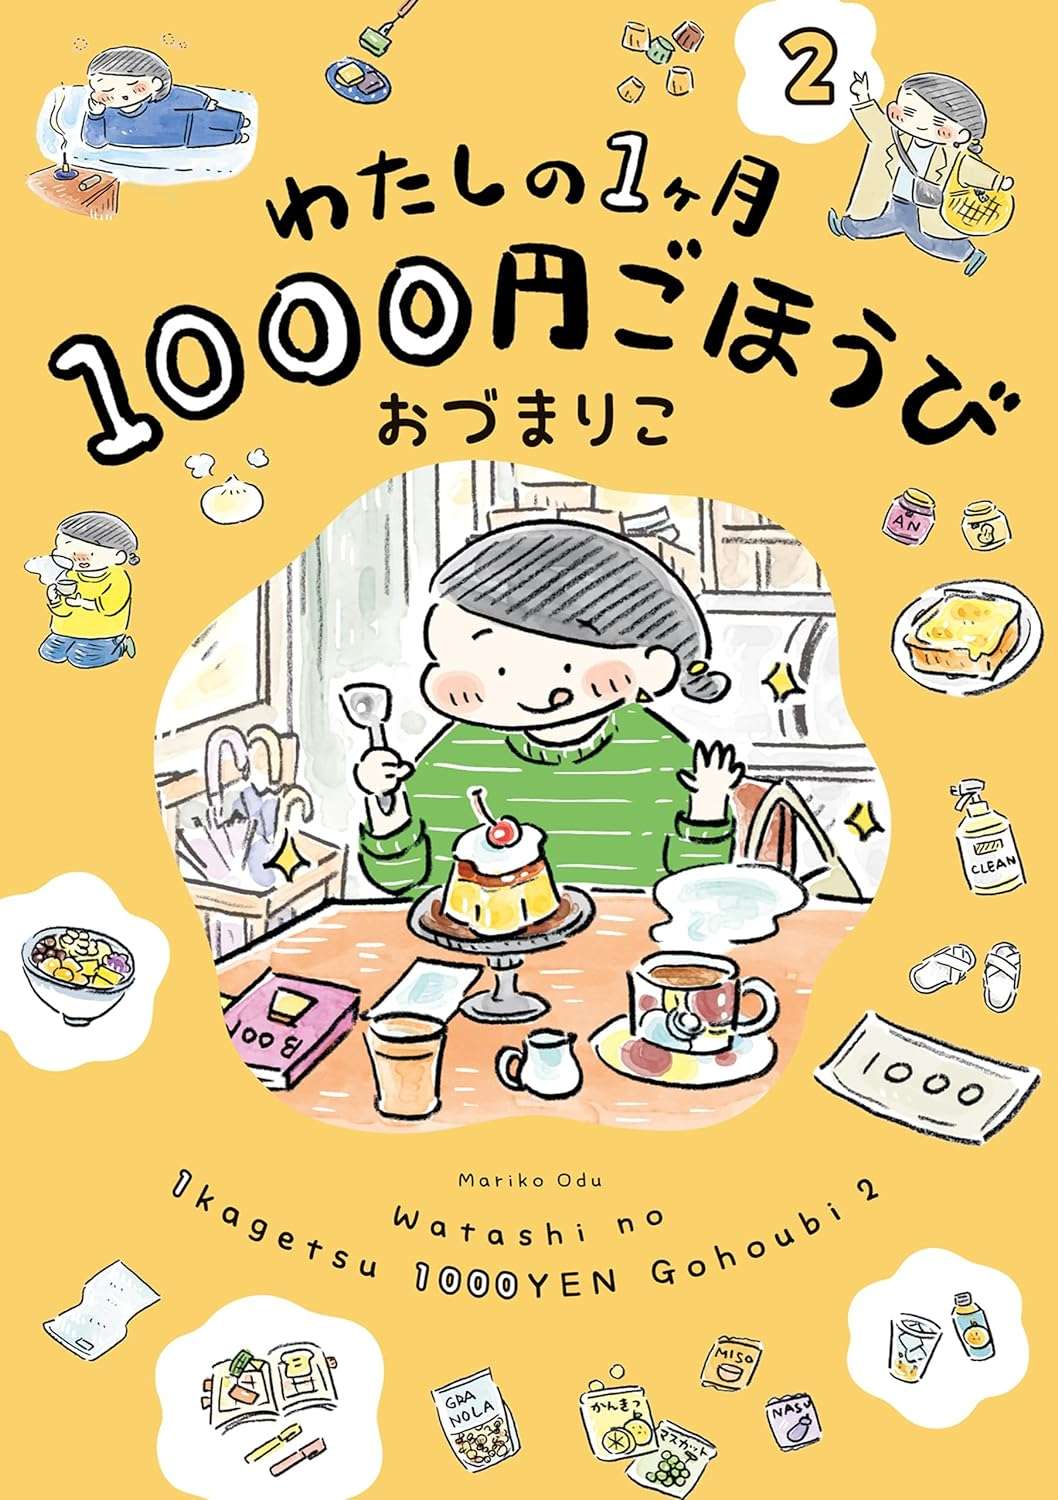 watashino1000yen-2Book.jpg